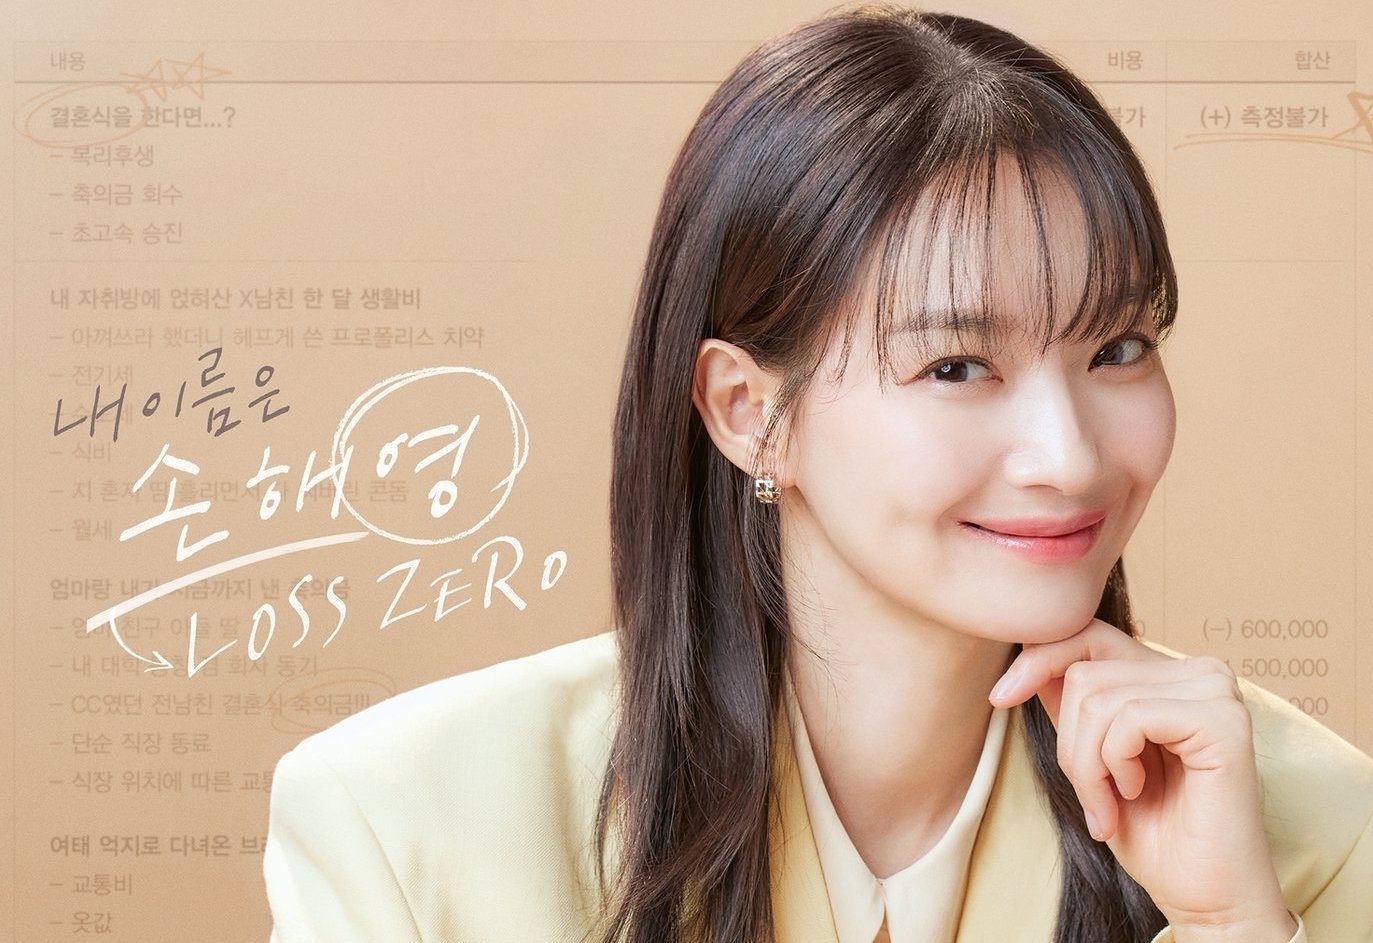 Shin Mina aims for zero loss in No Gain No Love